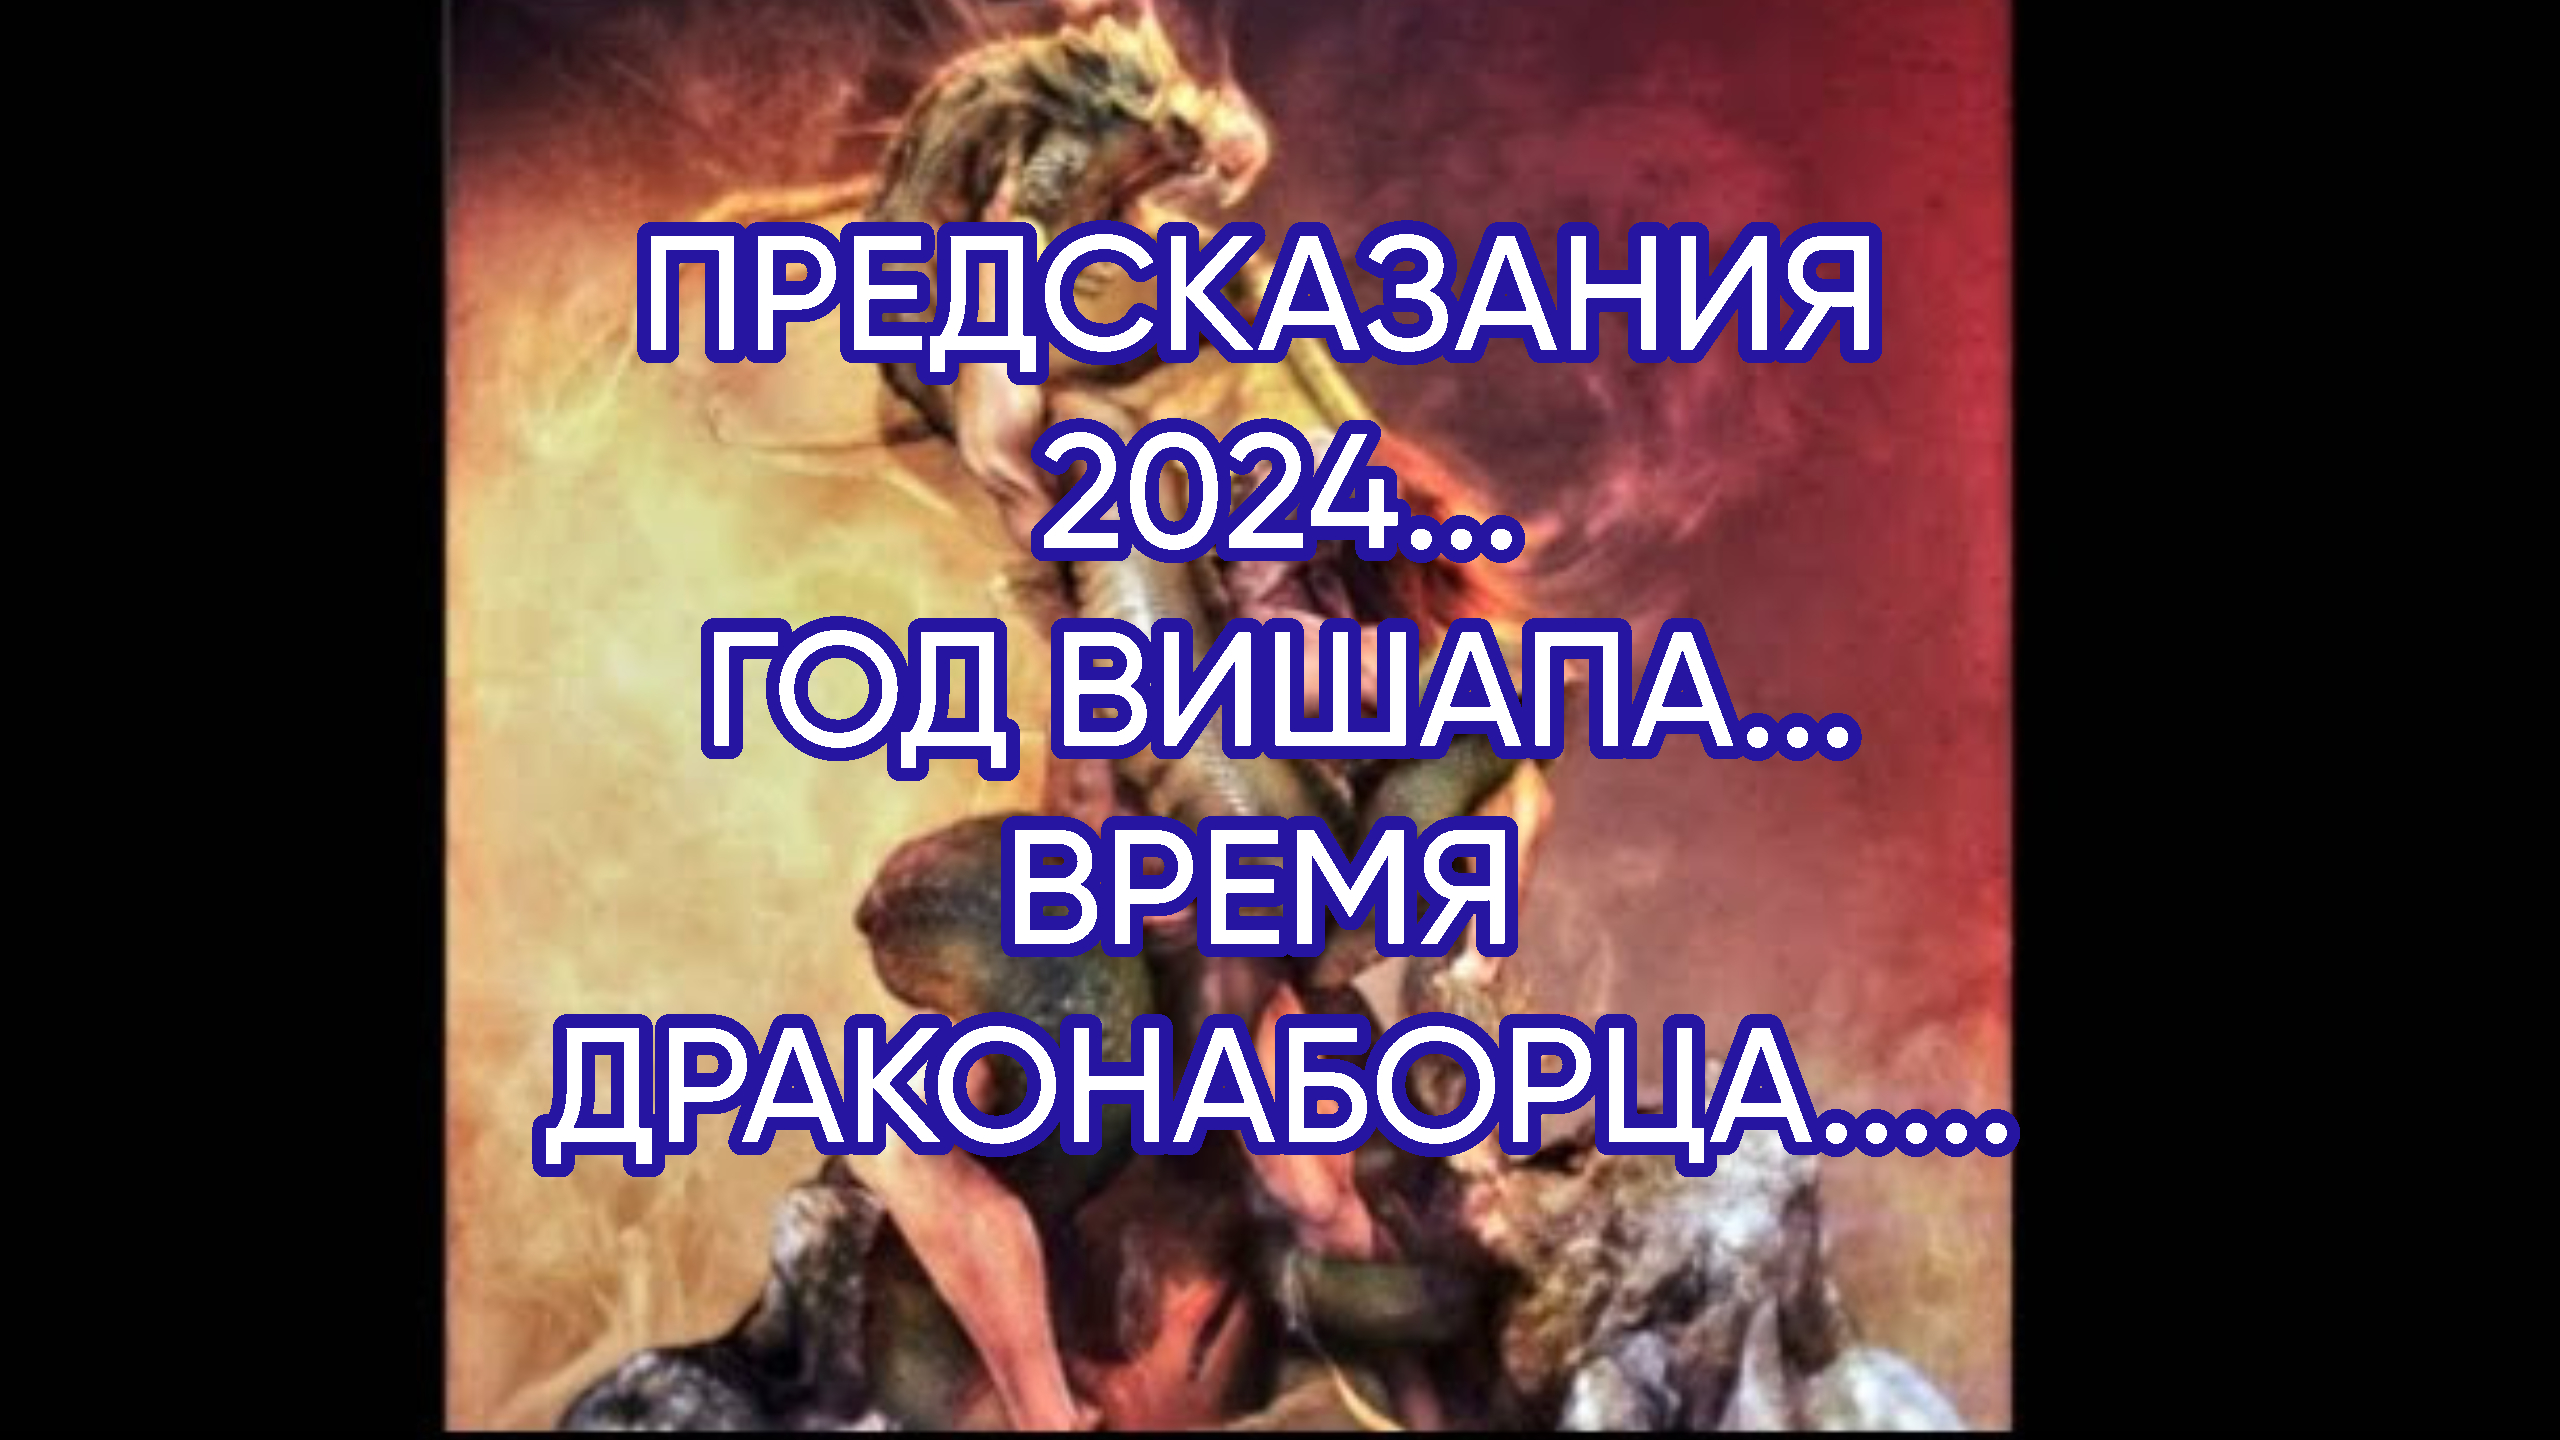 Что будет с россией в 2024 предсказания. Предсказания на 2024. Пророчества на 2024 год. Предсказания на 2024 год журнала.